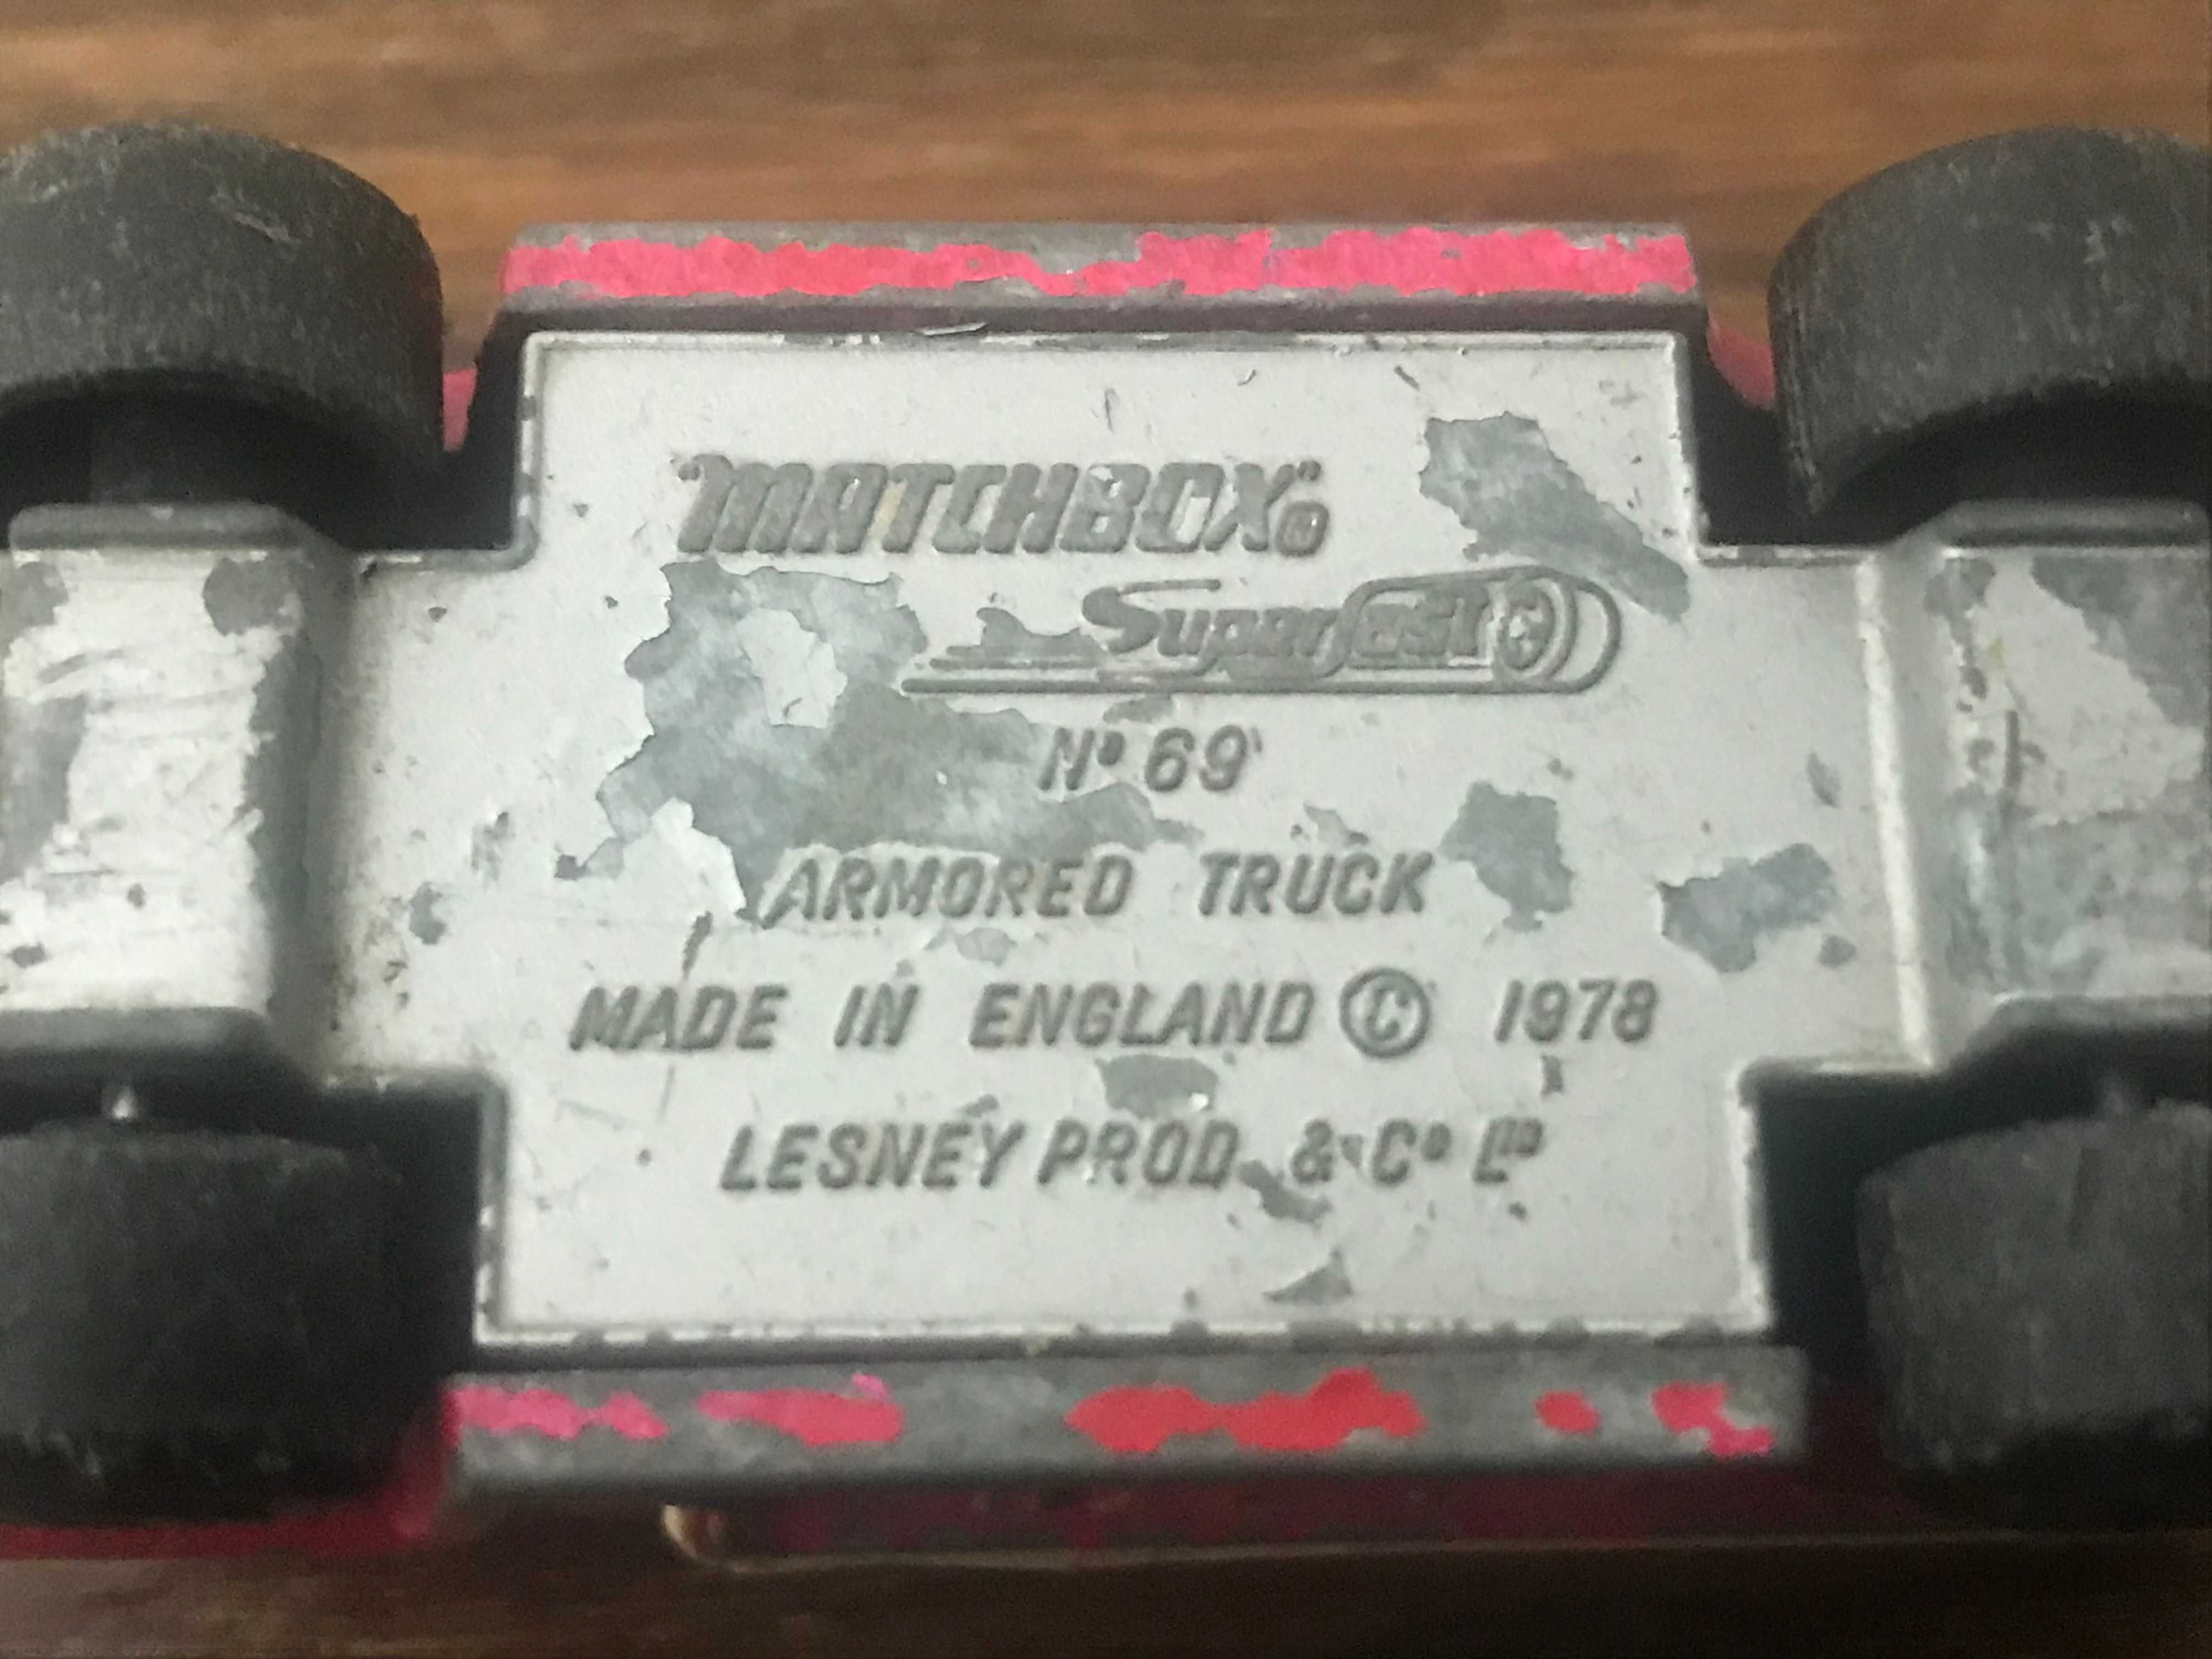 Matchbox Superfast No.69 Armored Truck resorak vintage prl